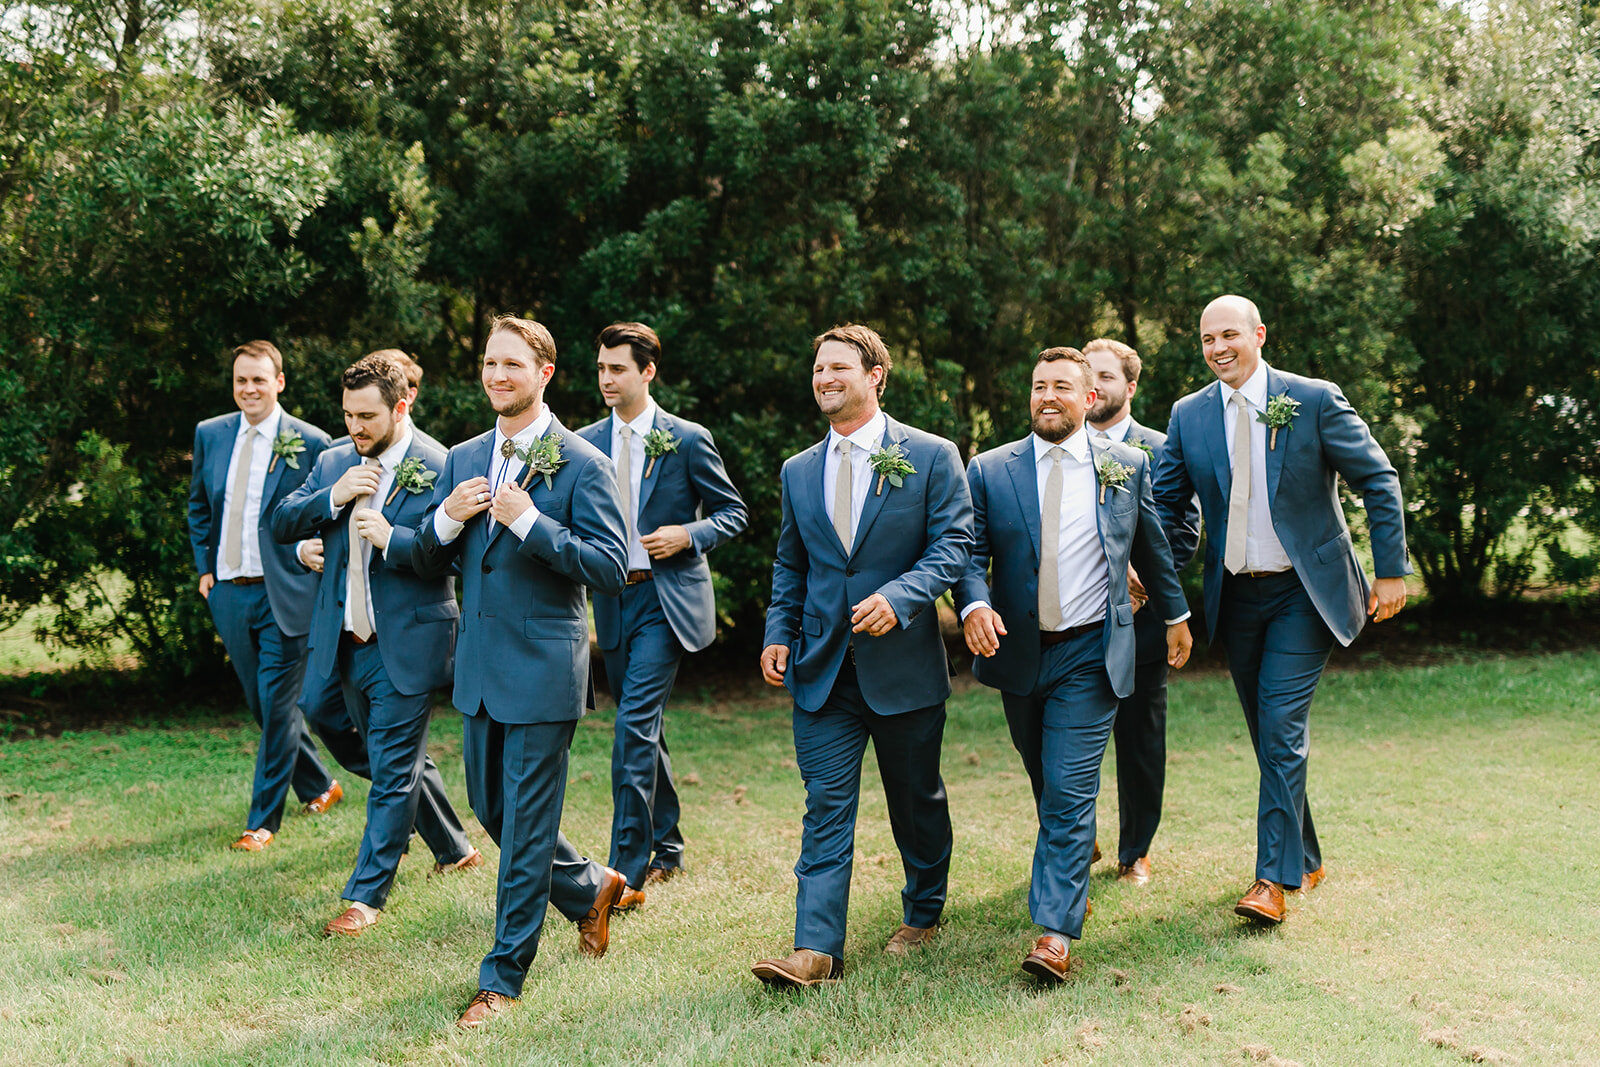  groom walking with the groomsmen 